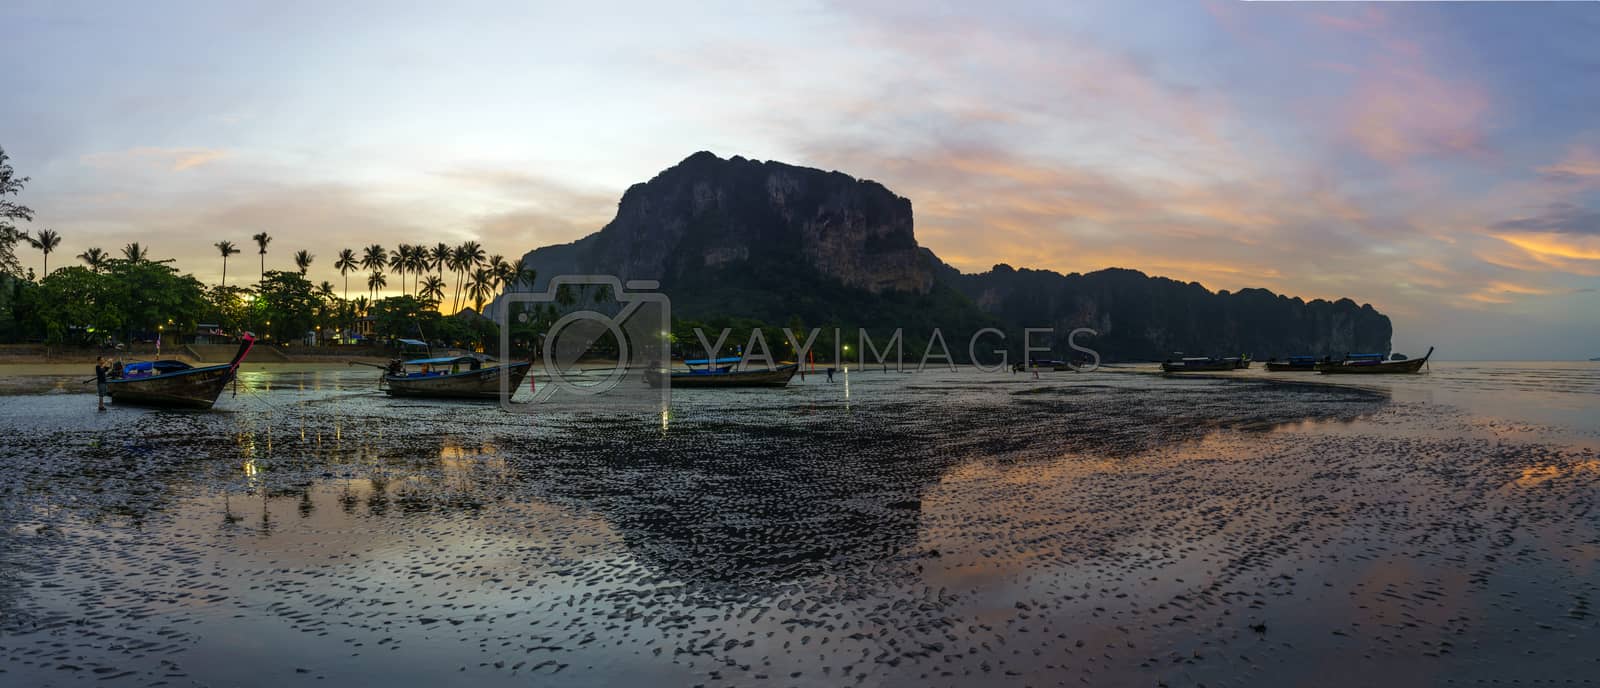 Royalty free image of The Ao Nang resort at sunrise by Netfalls